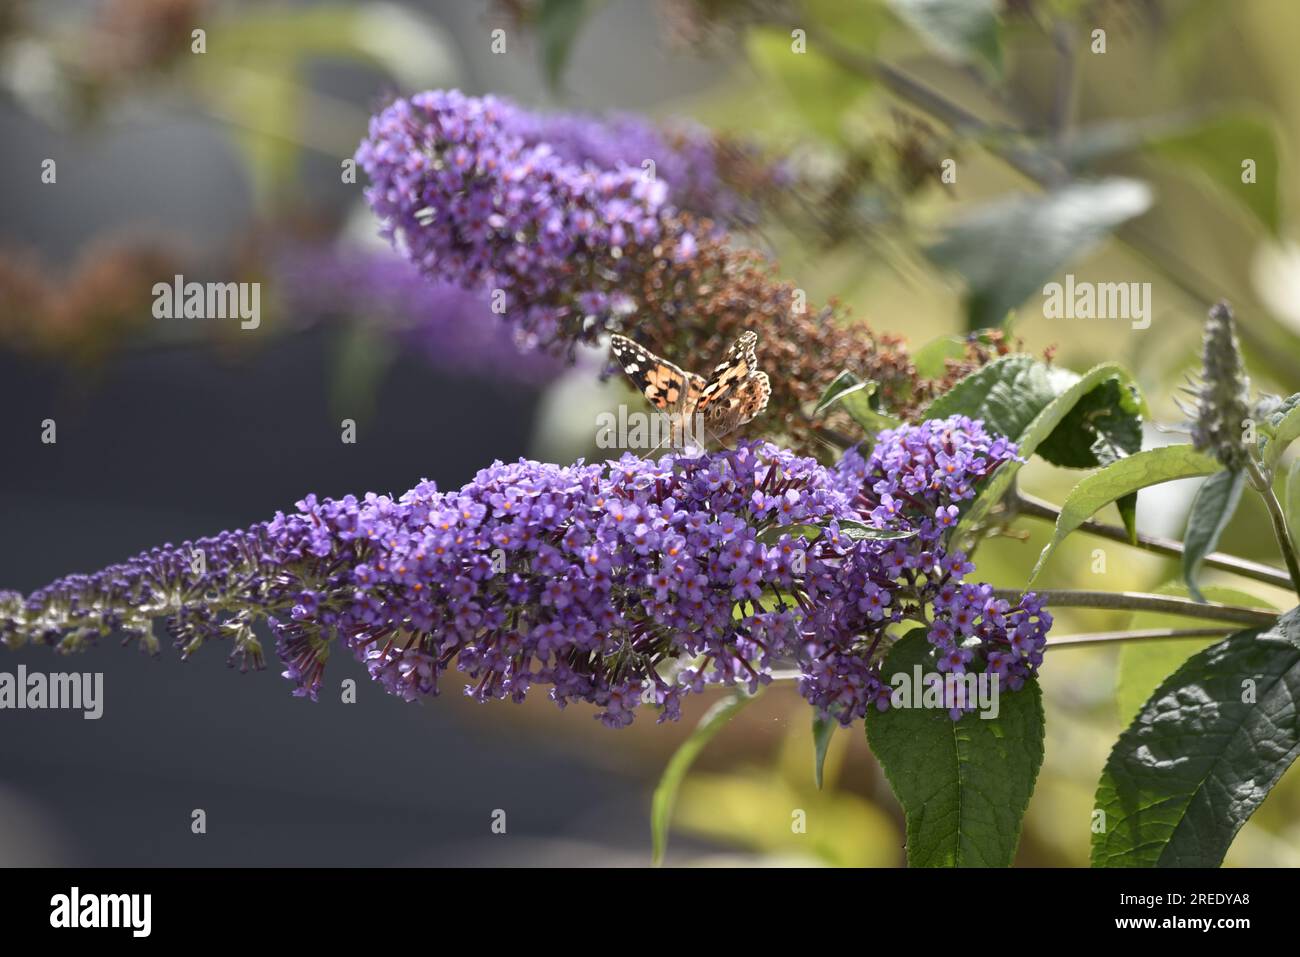 Sunlit Painted Lady Butterfly (Vanessa cardui) face caméra à partir d'une tige de fleurs de Bouddleia violettes, avec ailes partie ouverte, prise dans un jardin ensoleillé Banque D'Images